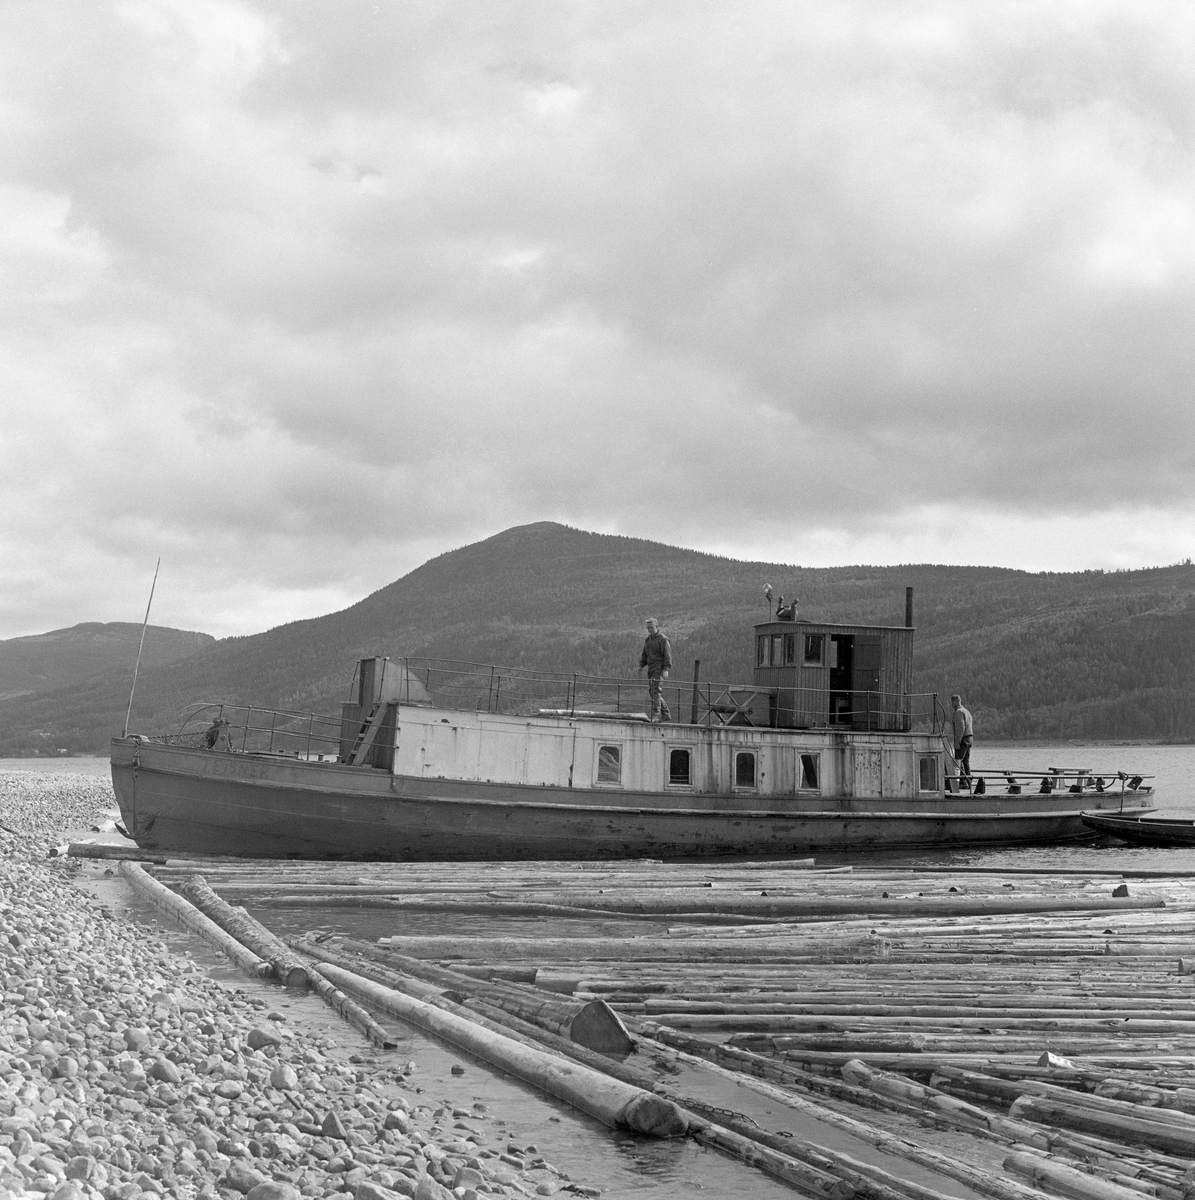 Slepebåt ved innsjø. Tømmersleping med slepebåten M/S Teisner på Fyresvatnet, Fyresdal, Telemark. Skipper Gunnar Sandvik . Båten ble bygd på Akers mekaniske verksted, og var opprinnelig en kombinert passasjer- og slepebåt fra 1876, Den fikk navnet M/S Teisner i 1913. Etterhvert ble det en ren slepebåt. Etter at tømmertransporten forsvant i 1971, ble båten tatt vare på av "Reiarlaget Teisners vener", men i 1990 ble båten dratt på land. Fyresvatn.